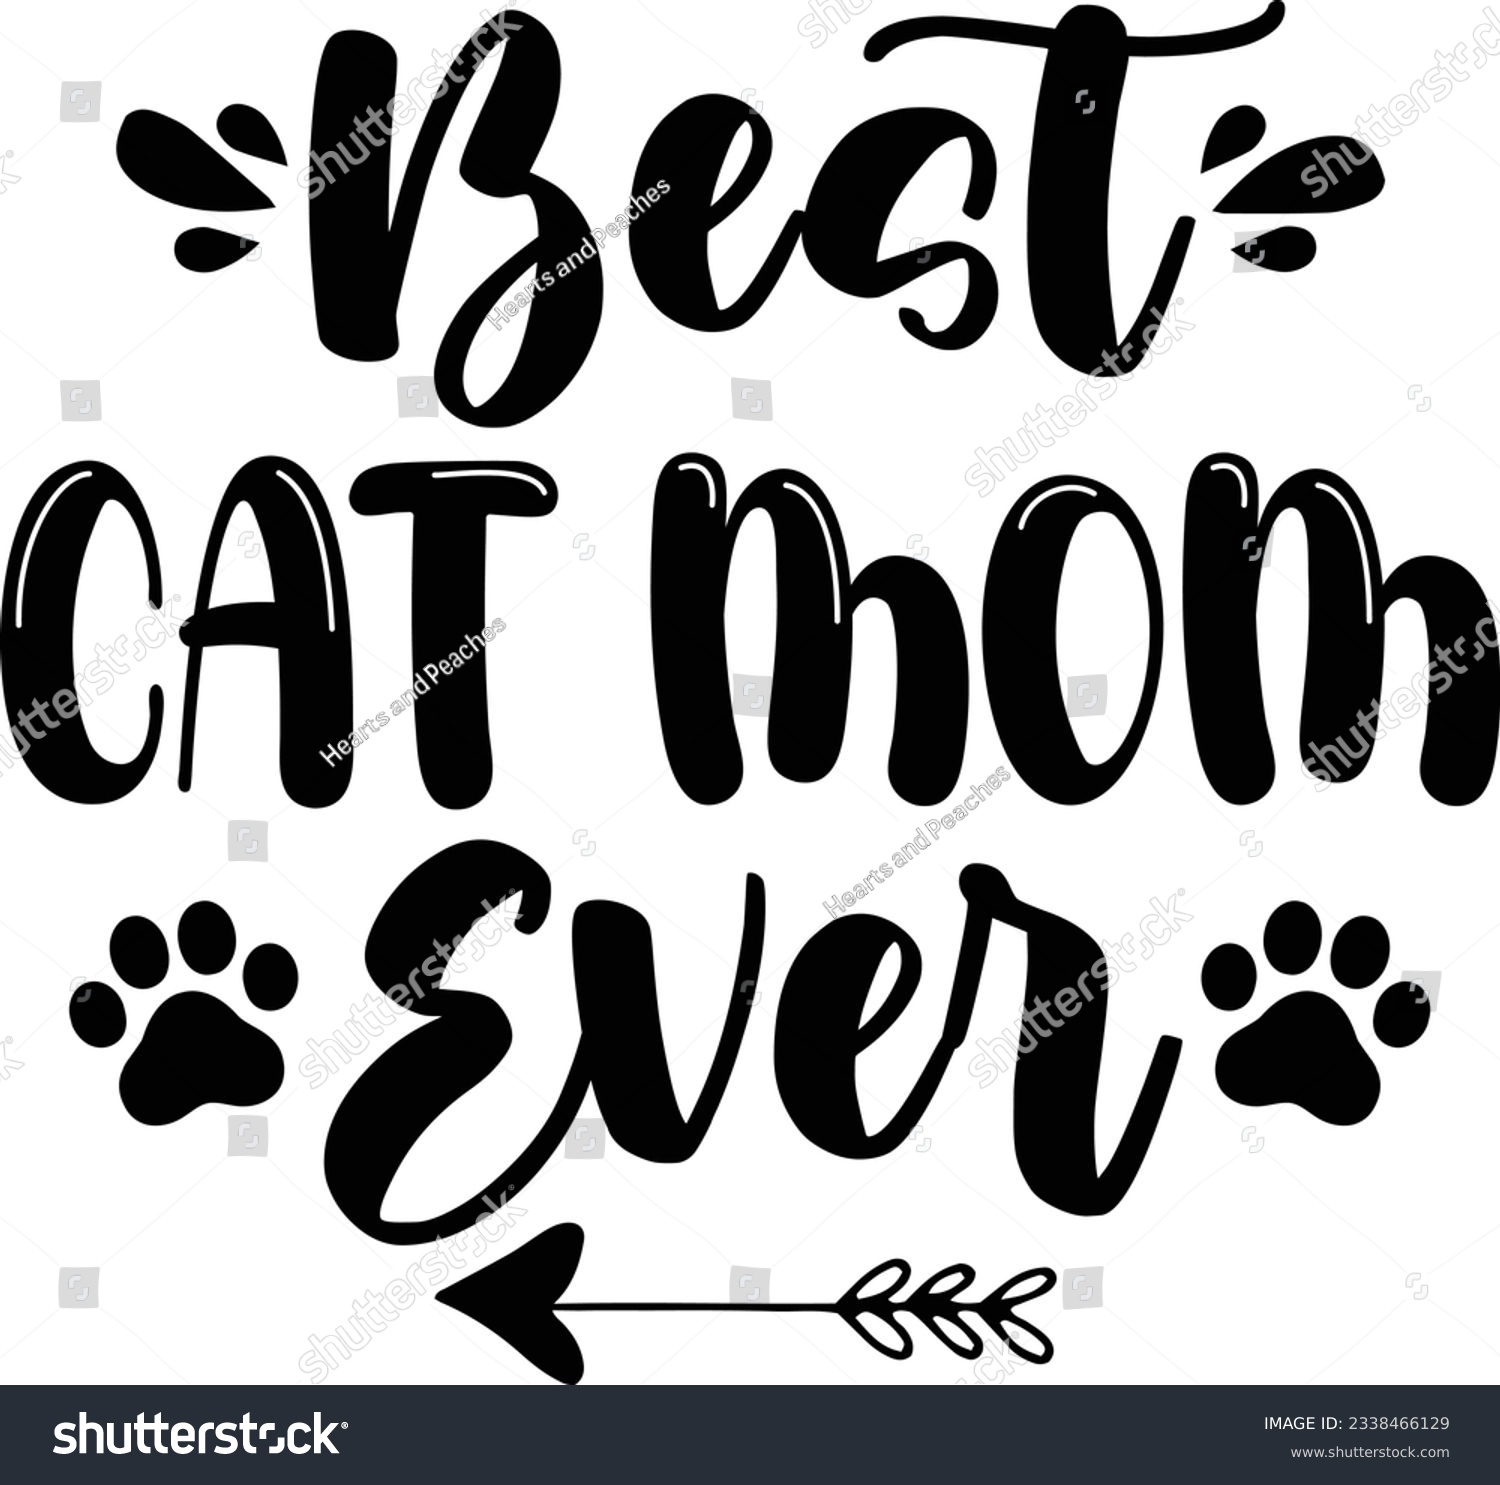 SVG of Best cat mom ever, Cat SVG Design, SVG File, SVG Cut File, T-shirt design, Tshirt design svg